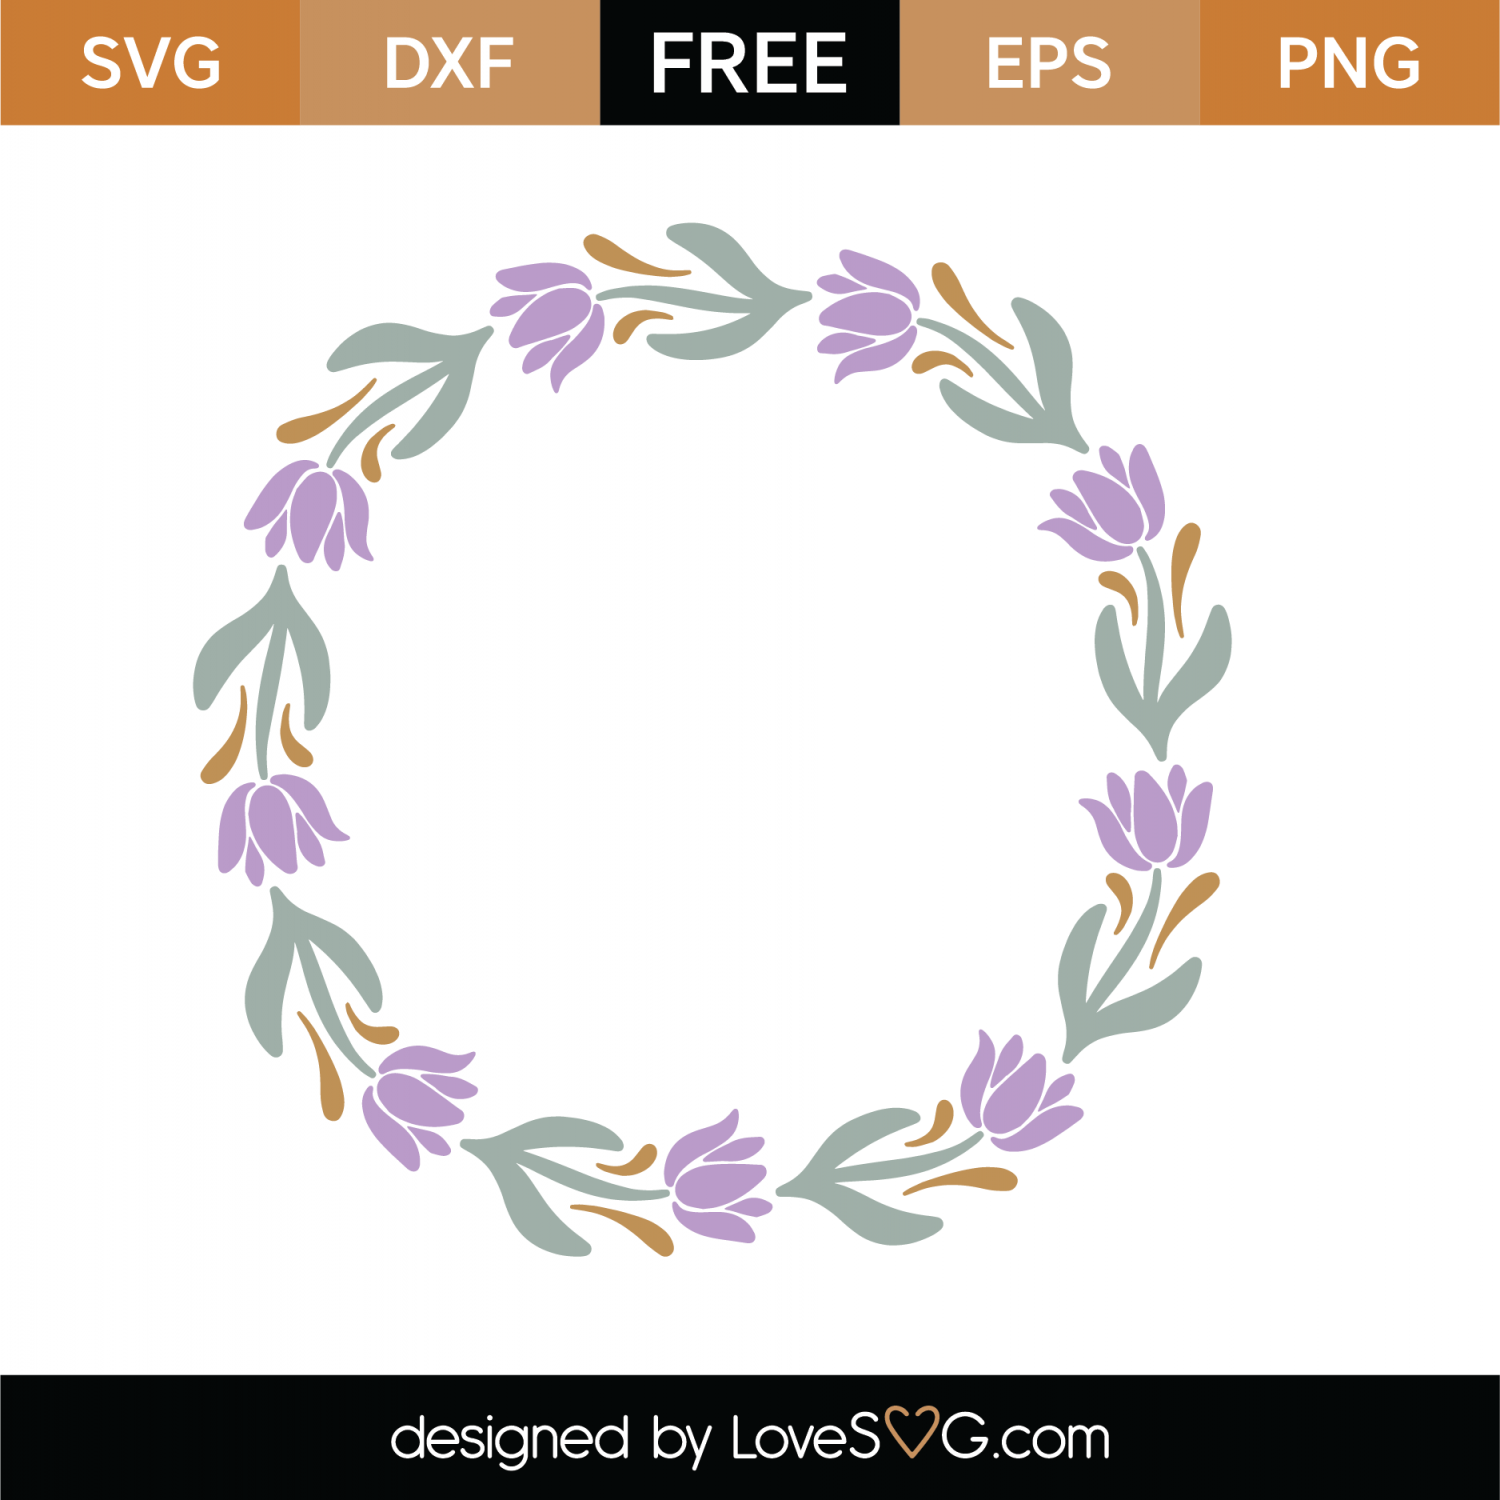 Monogram Floral Frame SVG File - Best Free Fonts for Branding and